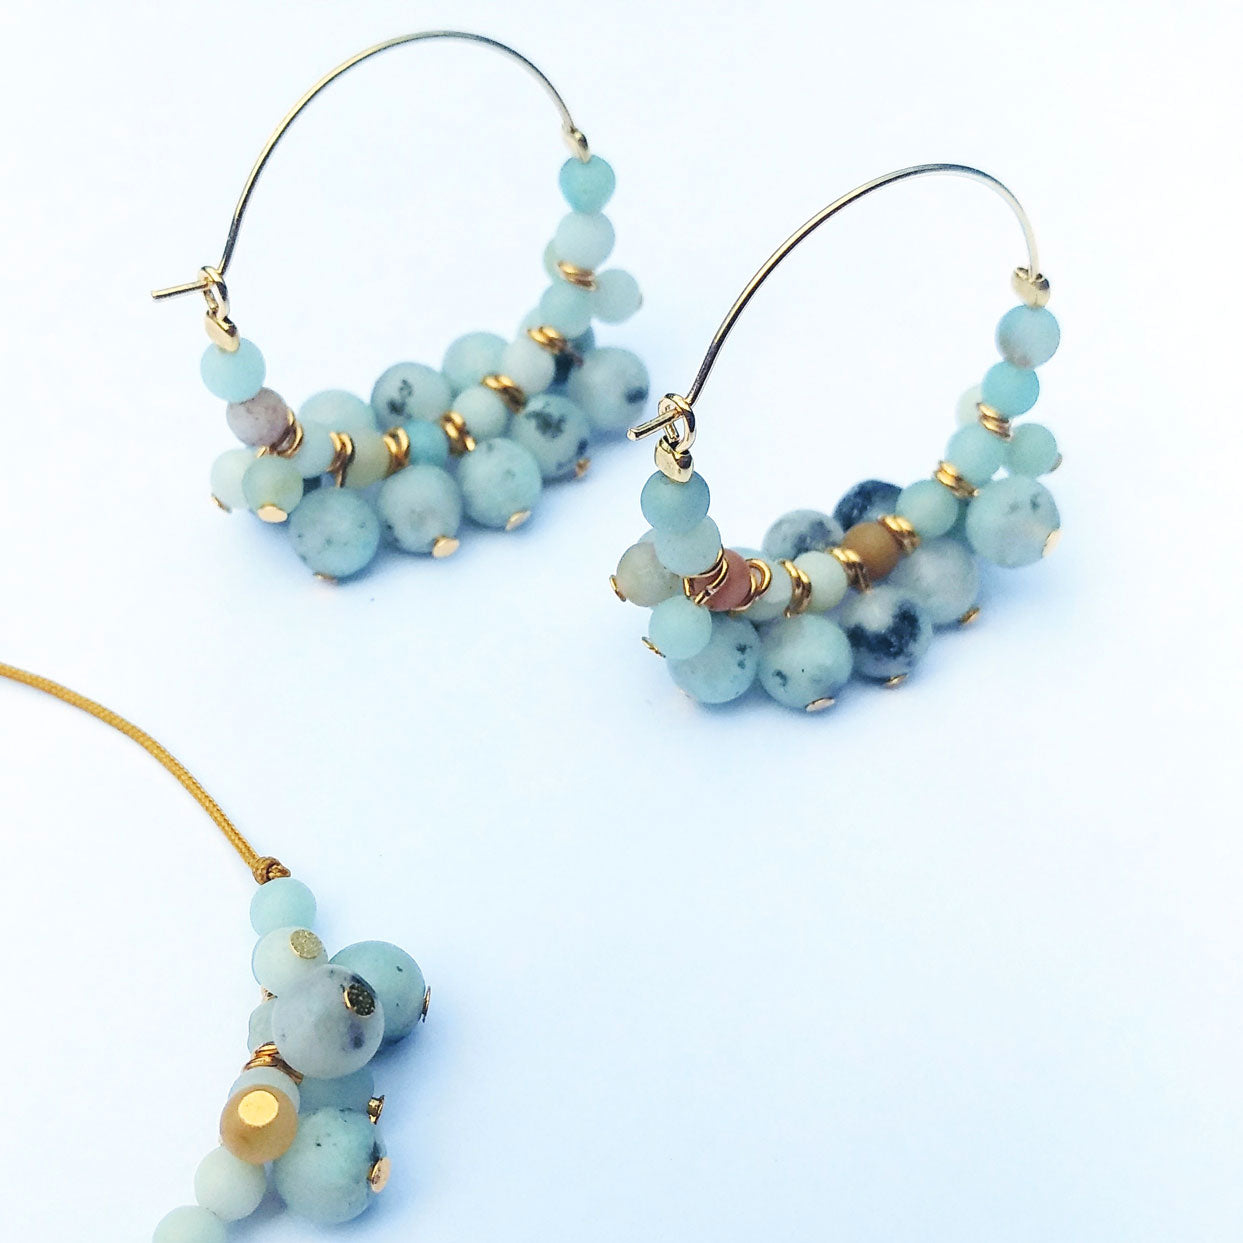 Goldene Creolen mit hellblauen Steinen (Kiwi Jaspis & Amazonit) made by pia norden